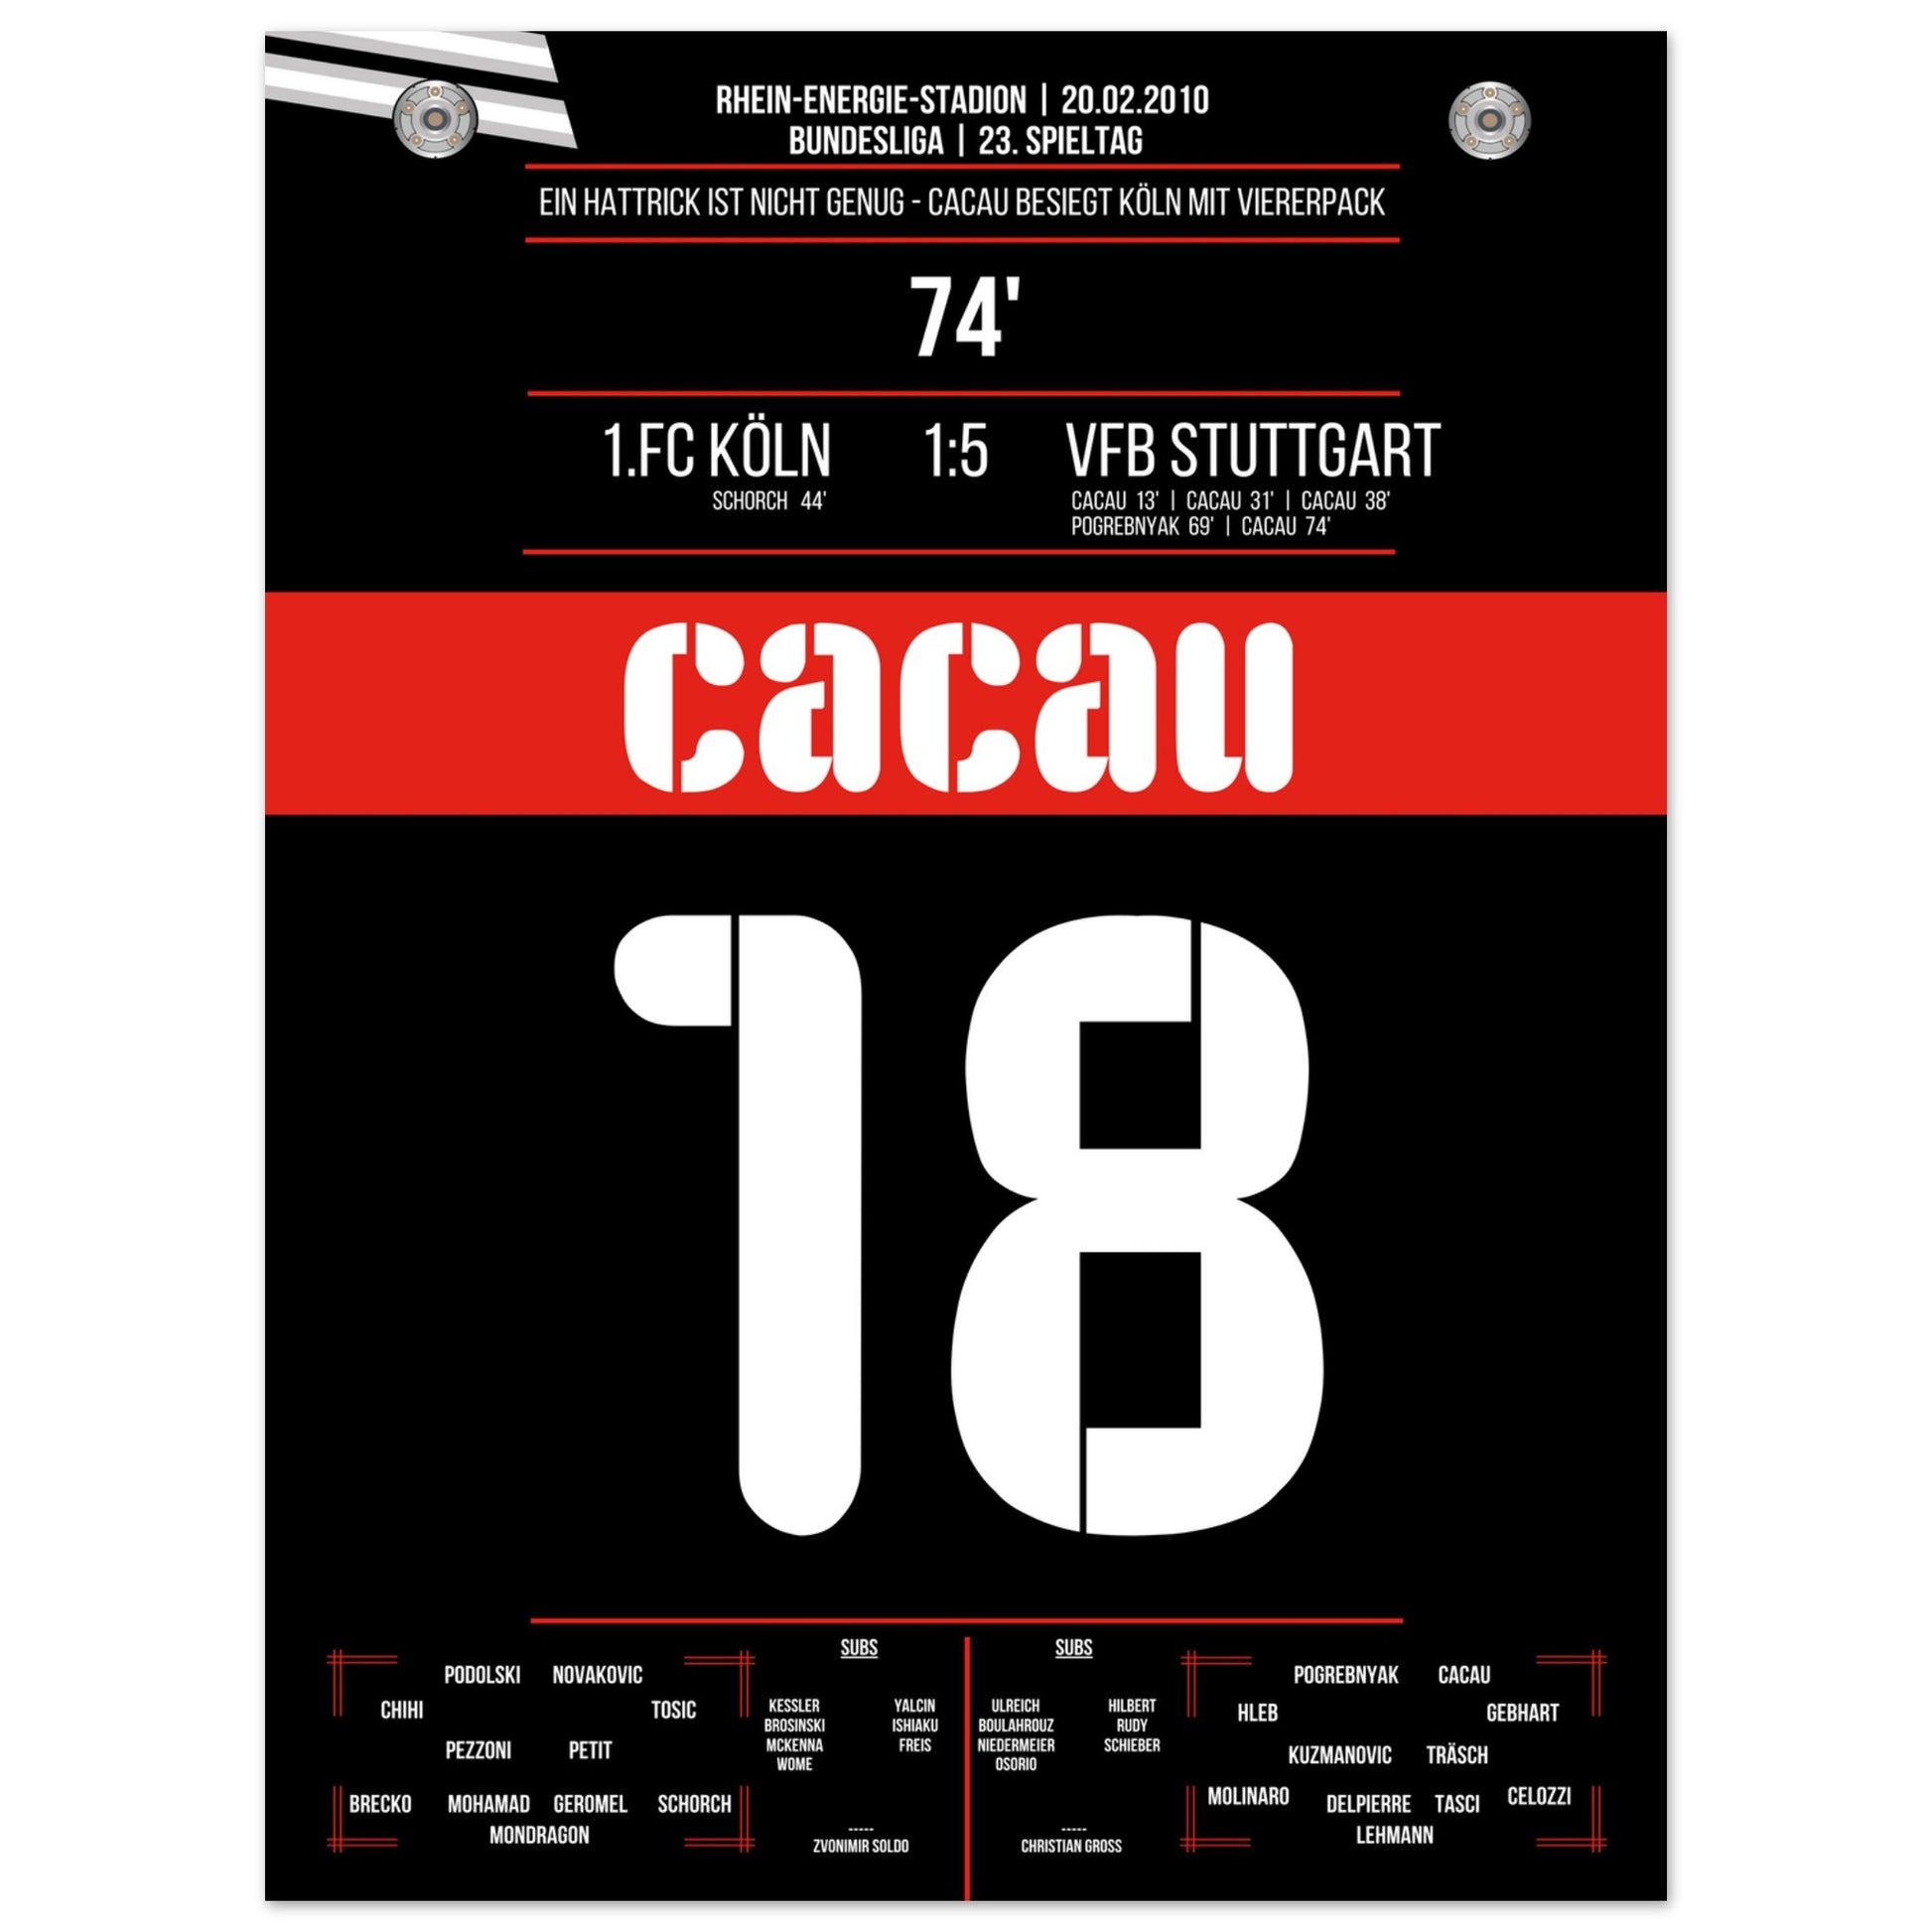 Cacau's Viererpack beim Auswärtsspiel in Köln 2010 45x60-cm-18x24-Ohne-Rahmen